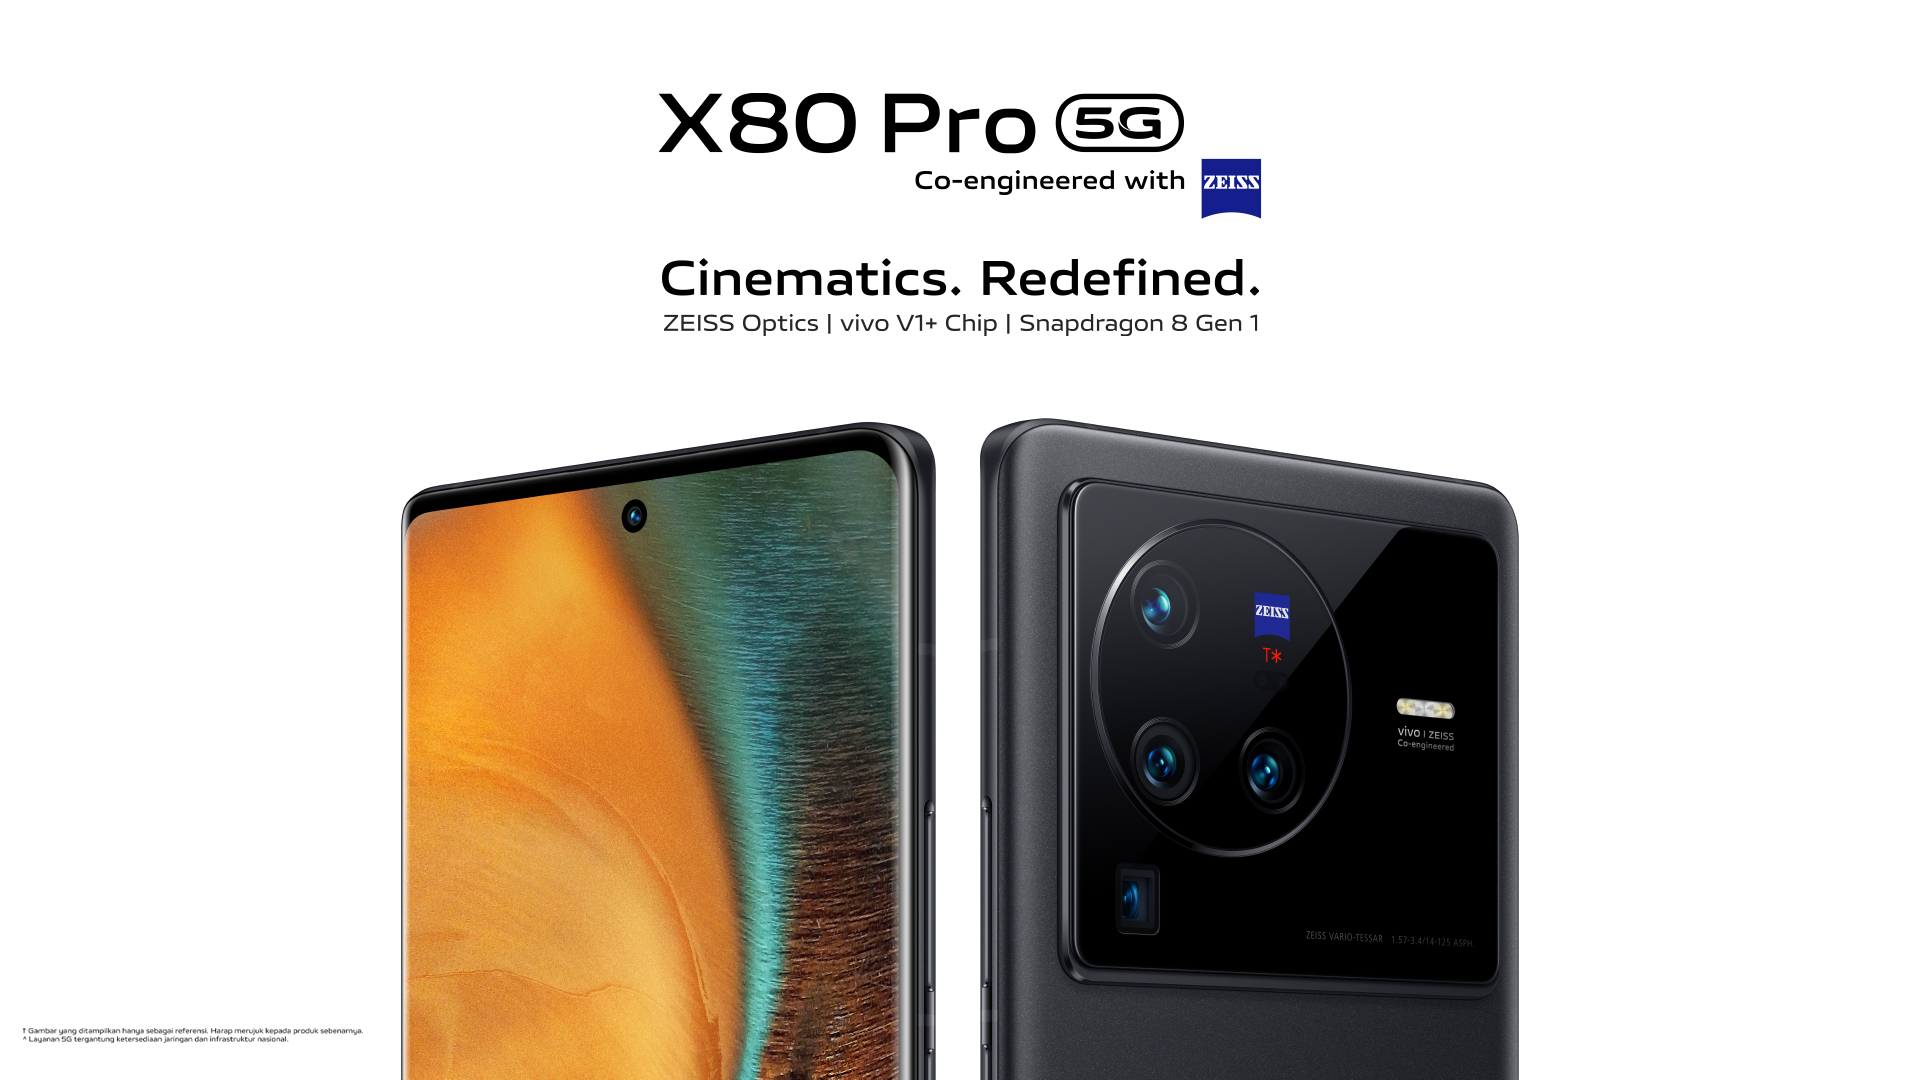 Vivo X80 Pro, Smartphone yang Punya Kamera Mewah dari Zeiss dan Dibekali Chipset Gahar Snapdragon 8 Gen 1